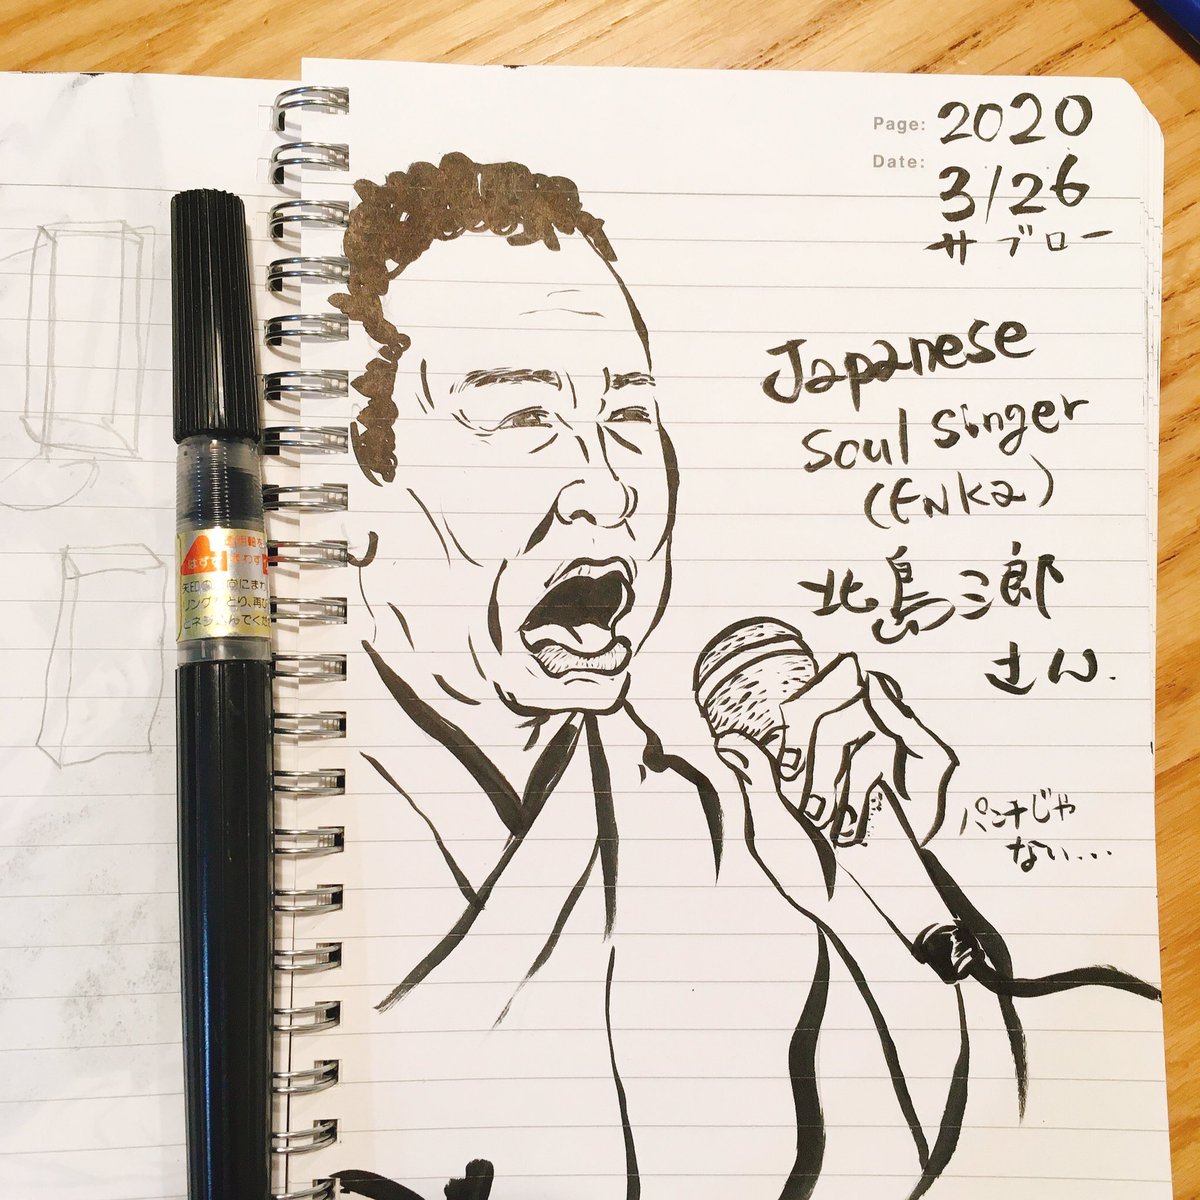 アキタヤセイイチ Akitaya178 Pa Twitter This Is Saburo Kitajima Enka Singer Enka Is Japanese Soul Music Portrait Illustration Drawing サブロー 3 26 の日ということで 北島三郎さんを パンチのイメージでしたが あれは木梨憲武さん由来なのかもね